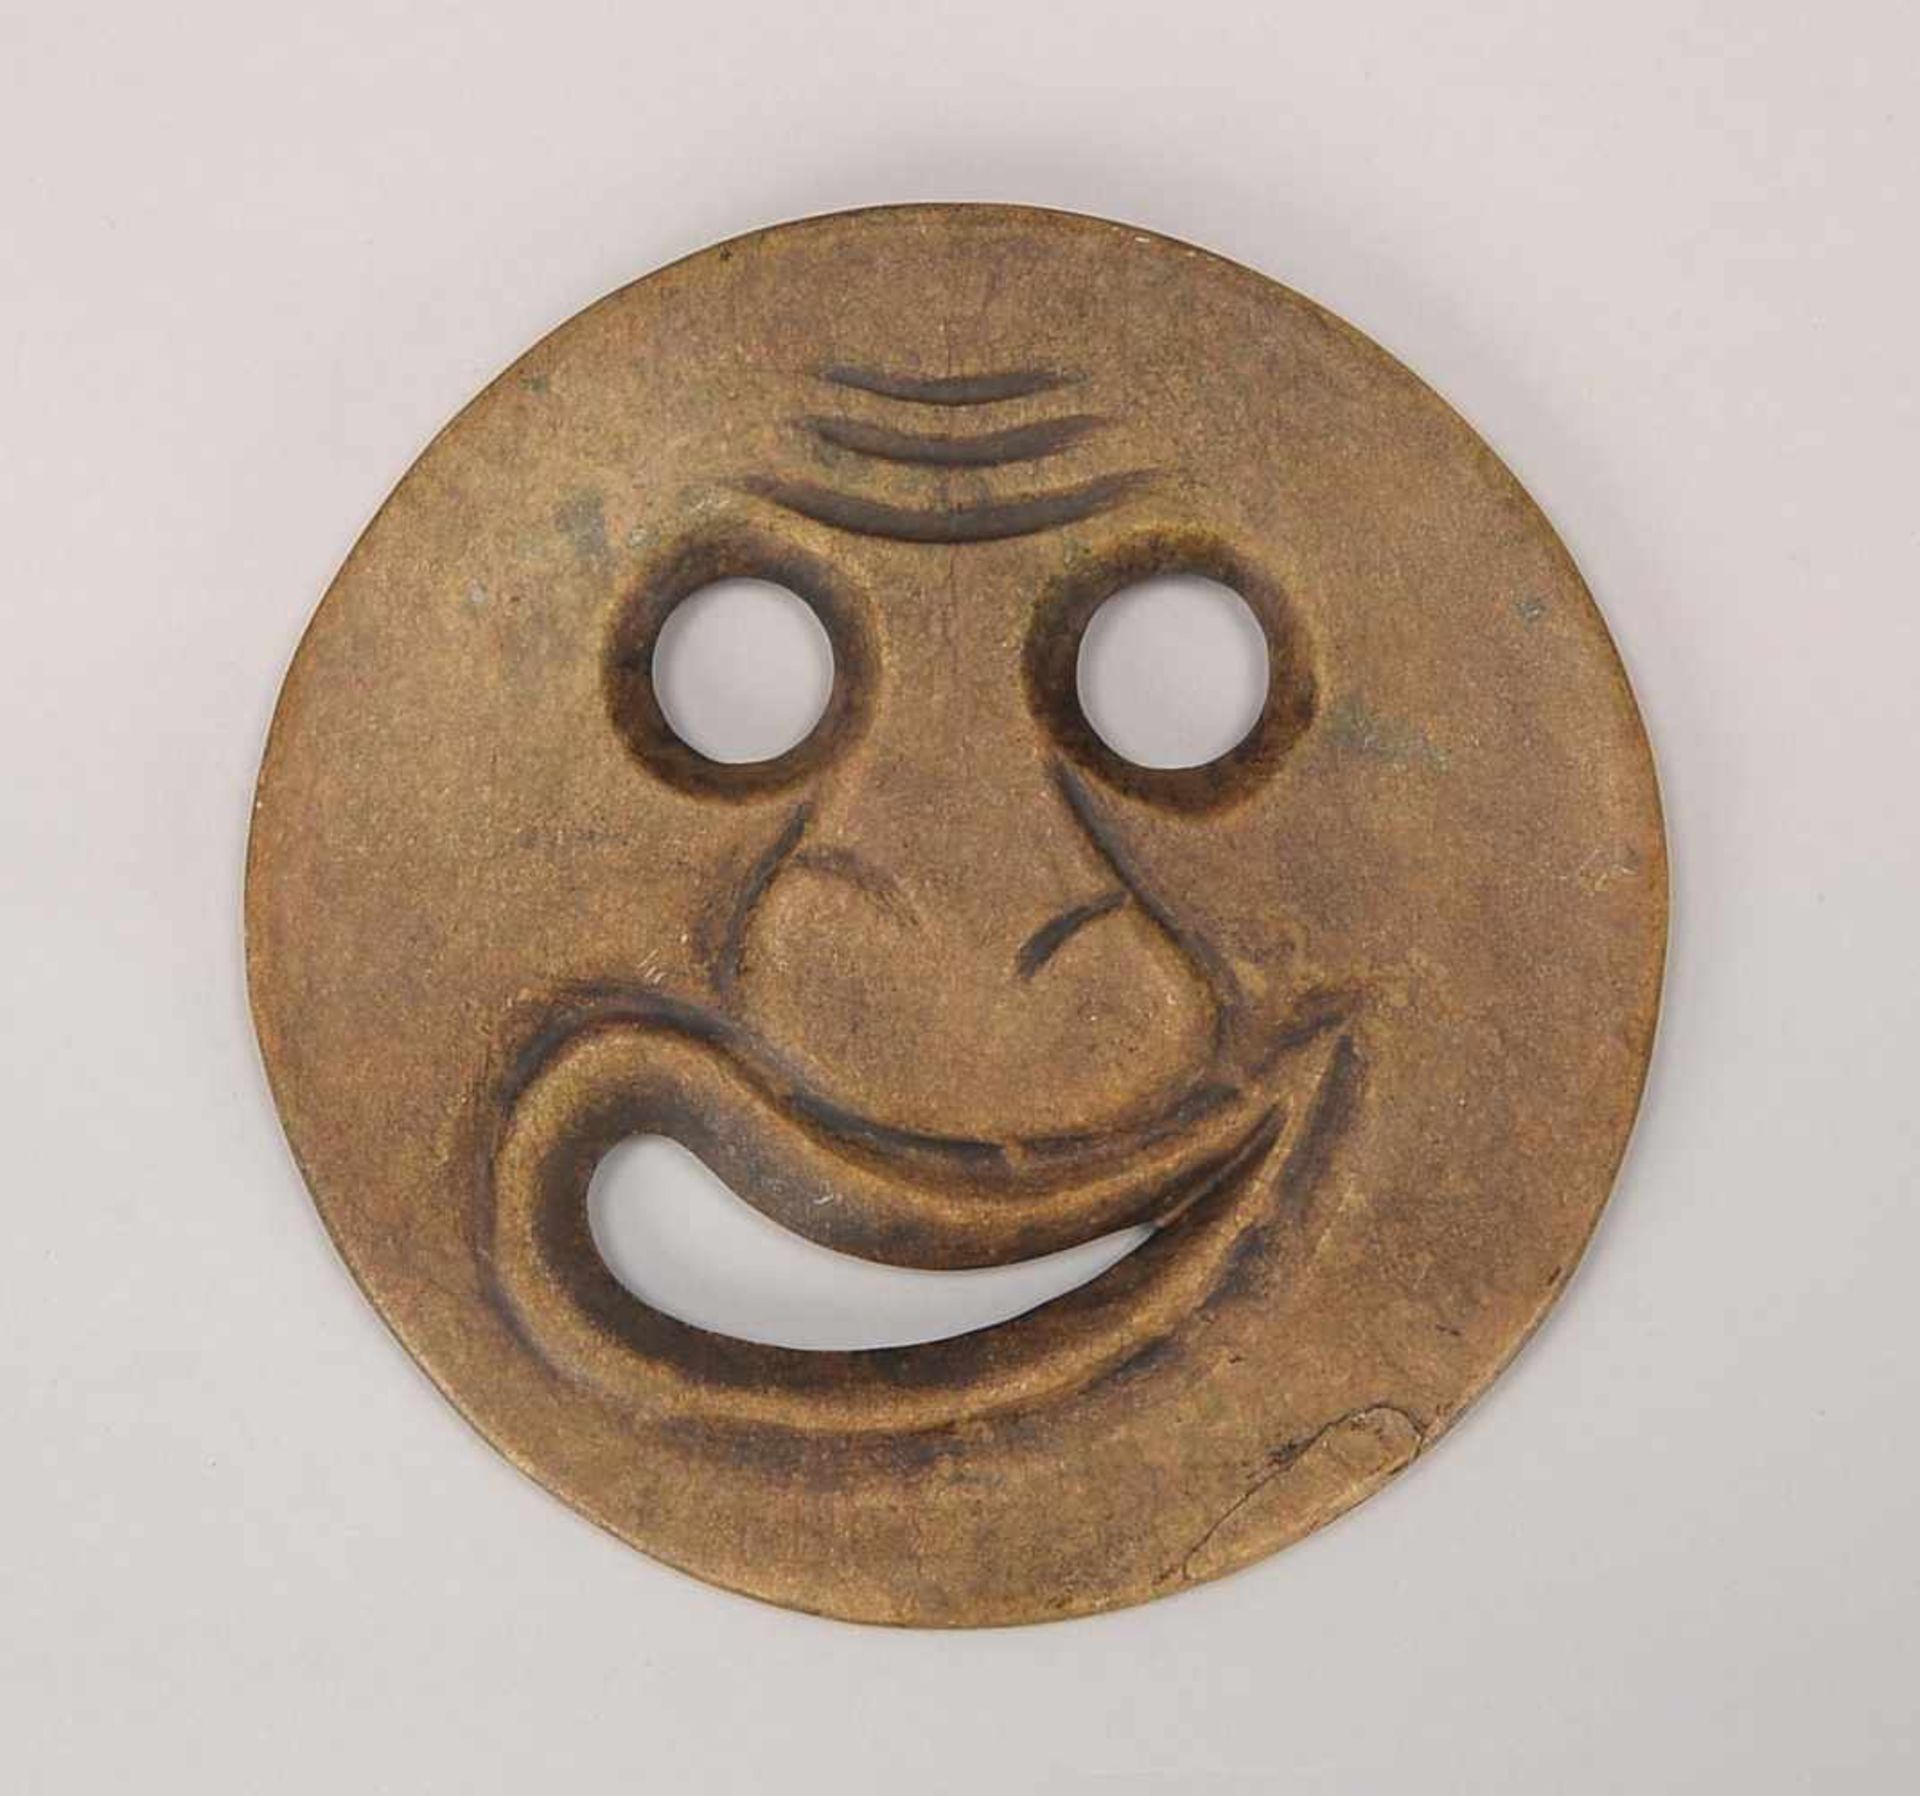 Jade-Schnitzerei, China, antik, stilisiertes 'Gesicht' in Scheibenform; Durchmesser Ø 17 cm, Gewicht